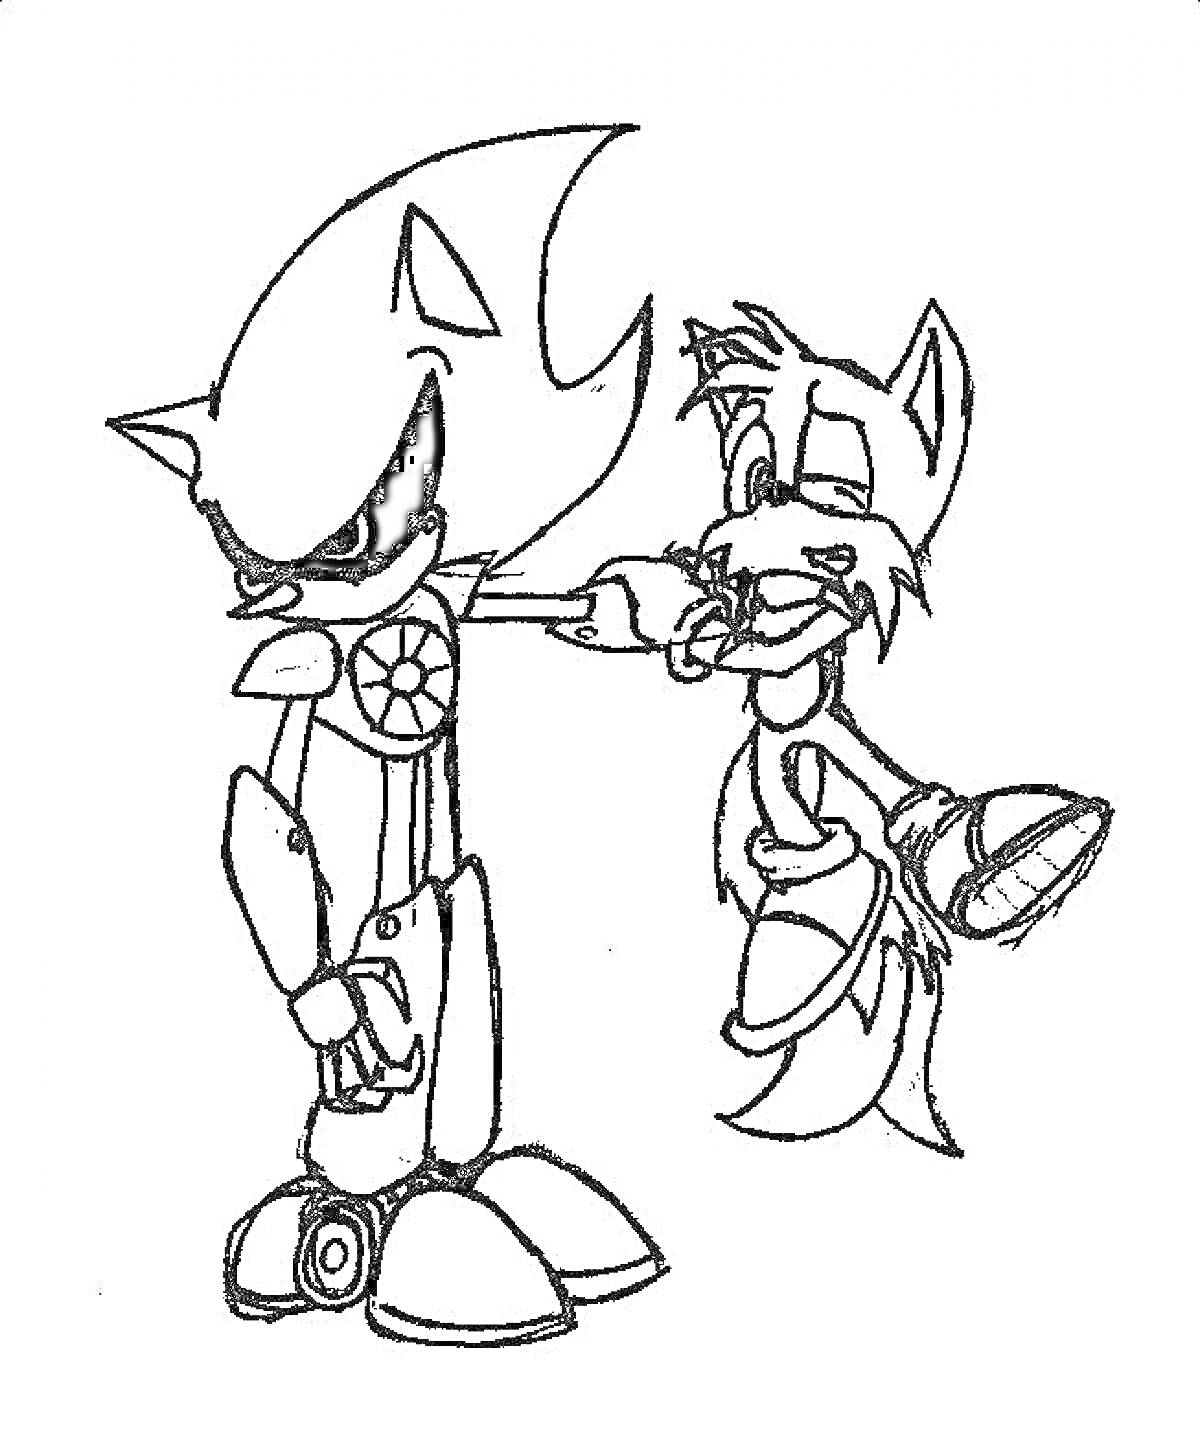 Sonic.exe держит Tails за руку, причем Tails выглядит напуганным и без сознания, оба персонажа покрыты раскадками с драматическими эмоциями